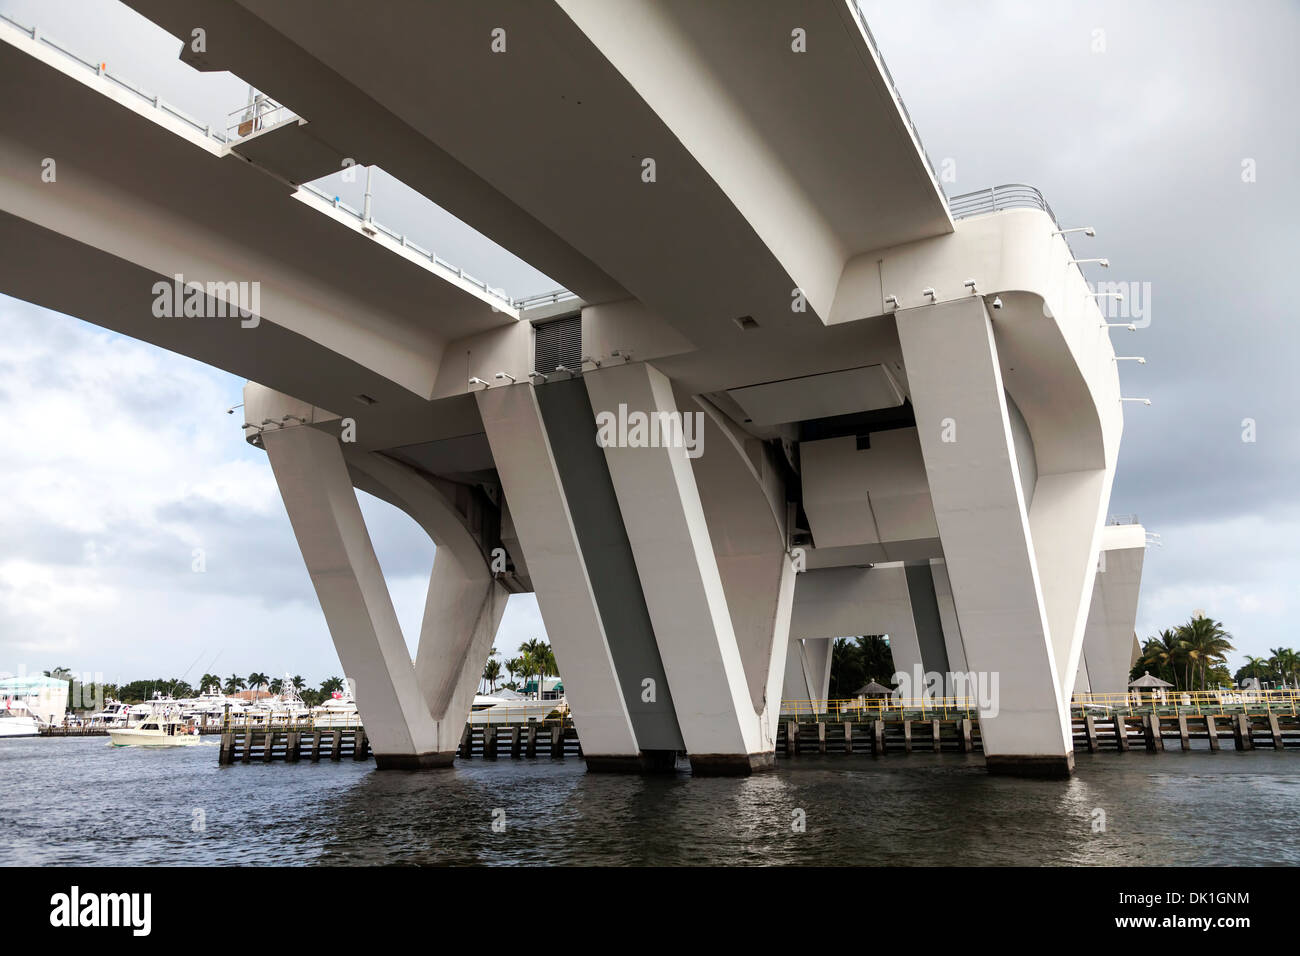 La 17th Street Causeway pont basculant à double battant, traverse le chenal de Port Everglades à Fort Lauderdale, Floride USA Banque D'Images